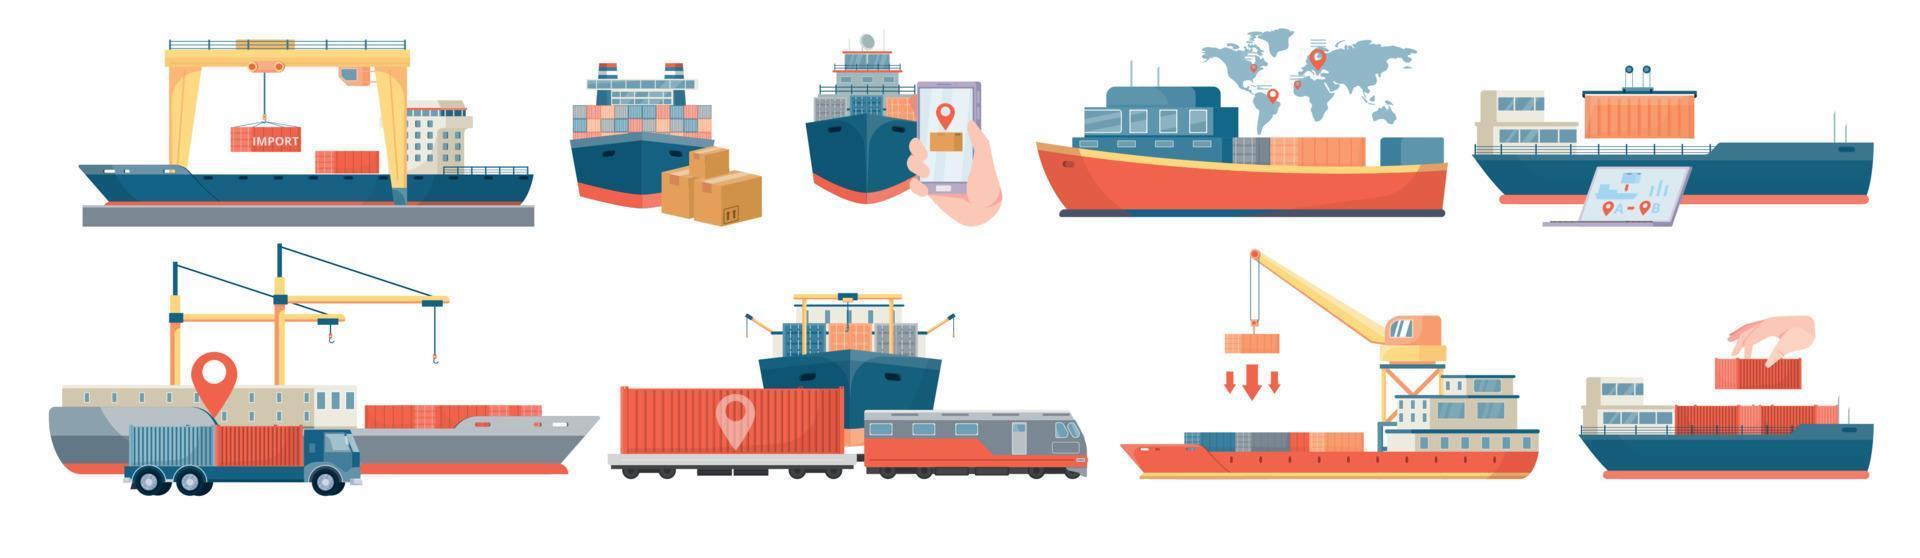 composición de vehículos de entrega marítima vector